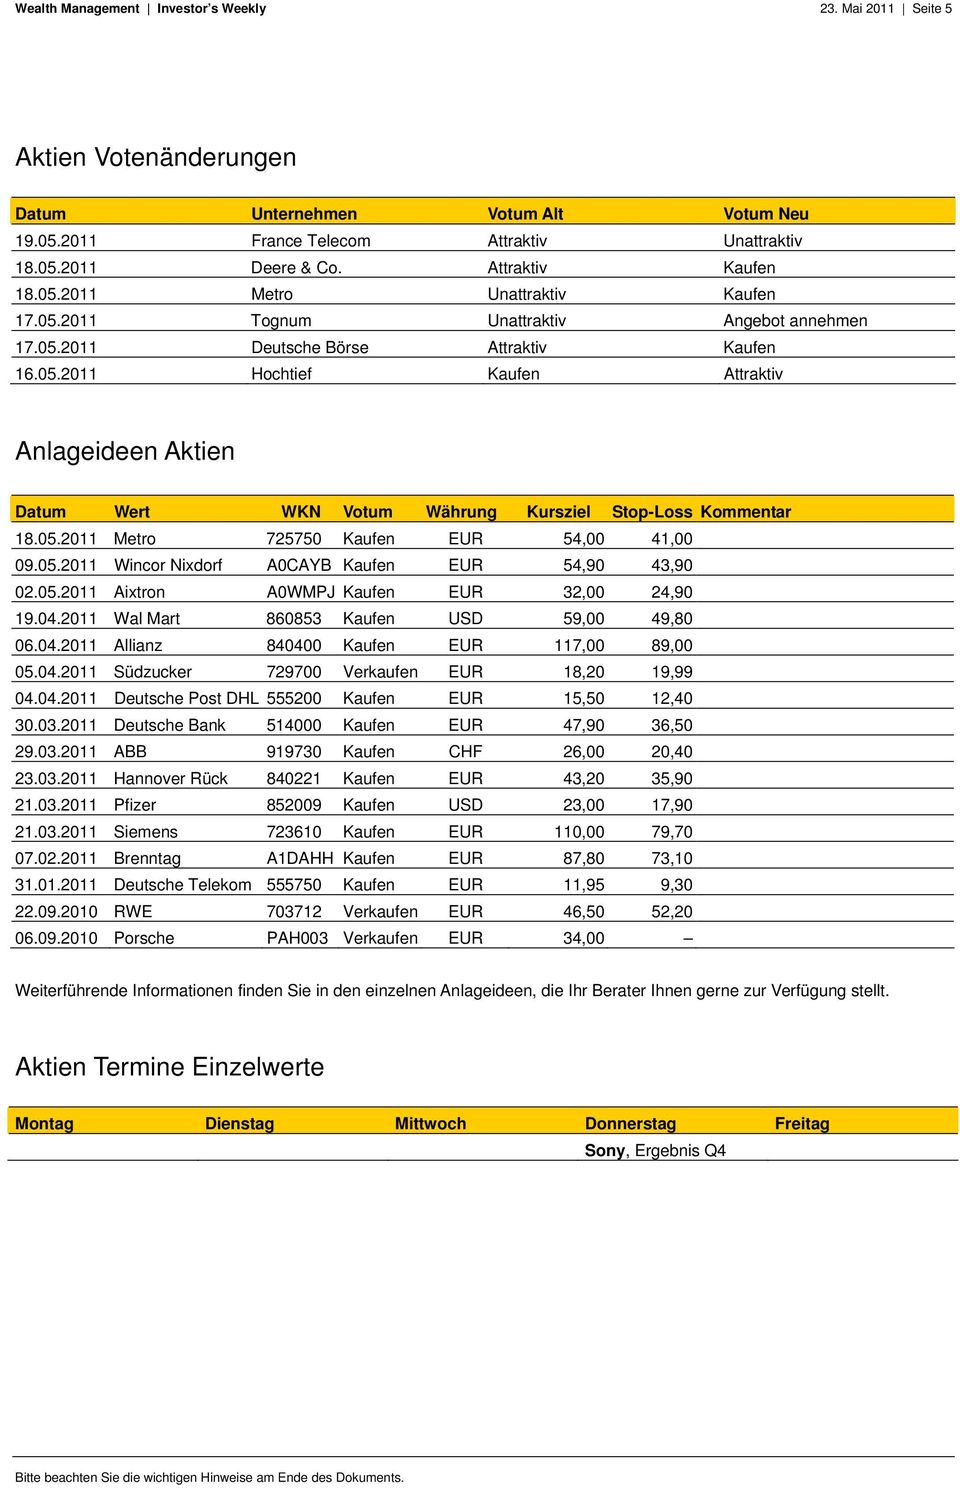 05.2011 Metro 725750 Kaufen EUR 54,00 41,00 09.05.2011 Wincor Nixdorf A0CAYB Kaufen EUR 54,90 43,90 02.05.2011 Aixtron A0WMPJ Kaufen EUR 32,00 24,90 19.04.